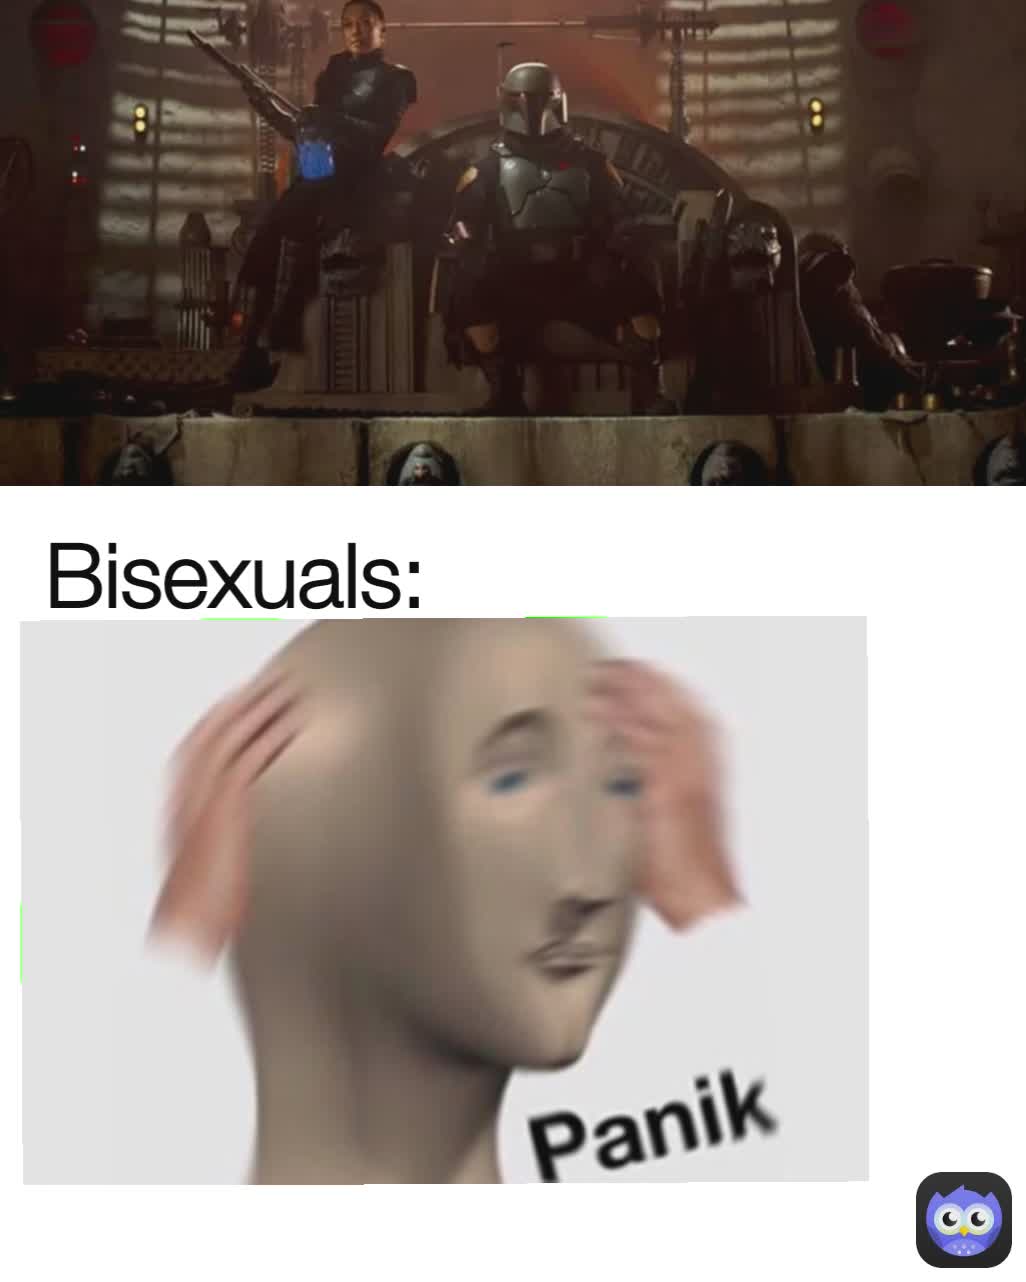 Bisexuals: